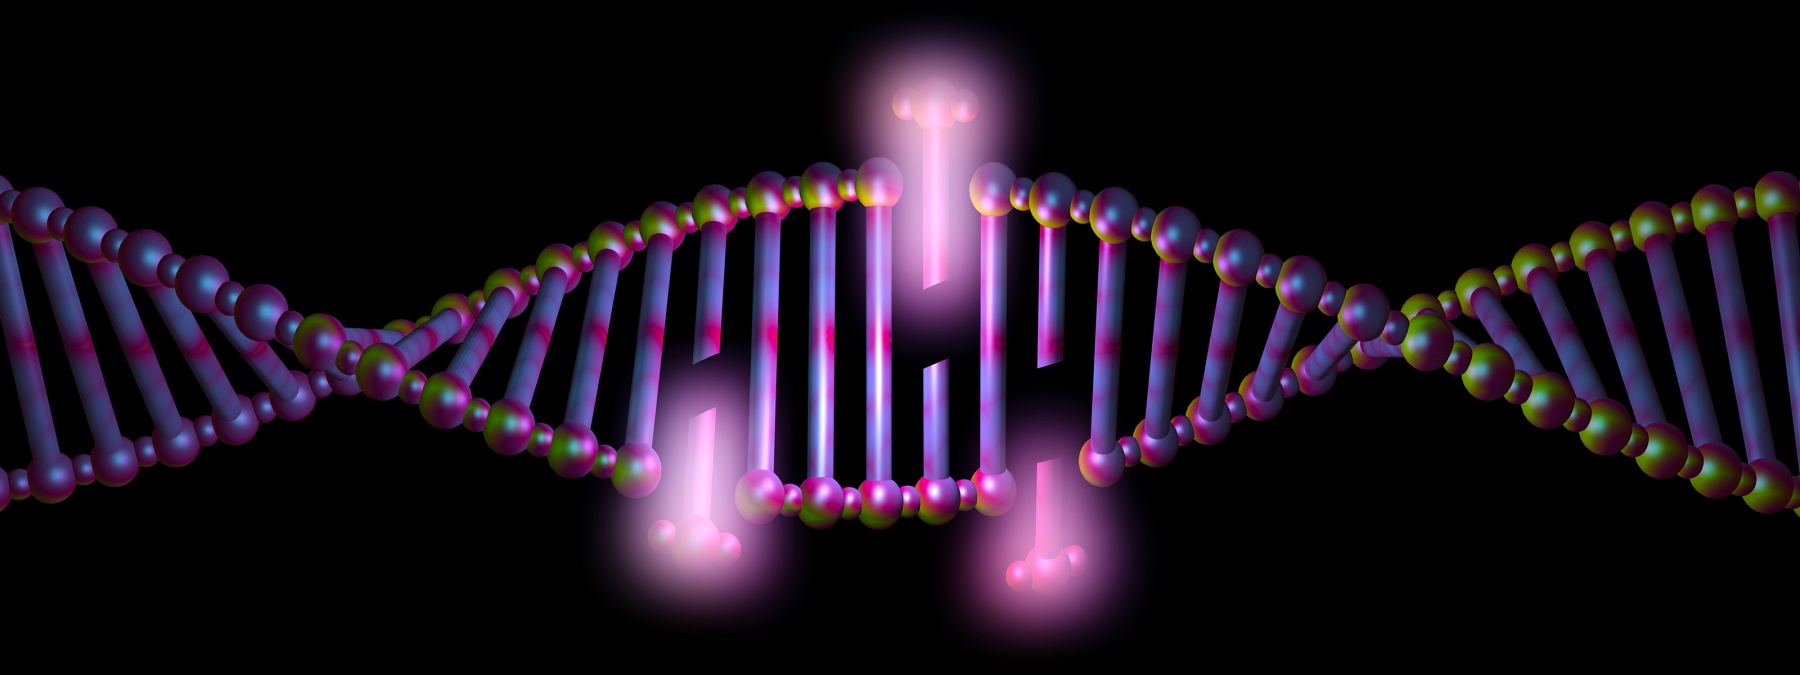 DNA trattato con CRISPR/Cas9 per riparare una mutazione da duplicazione